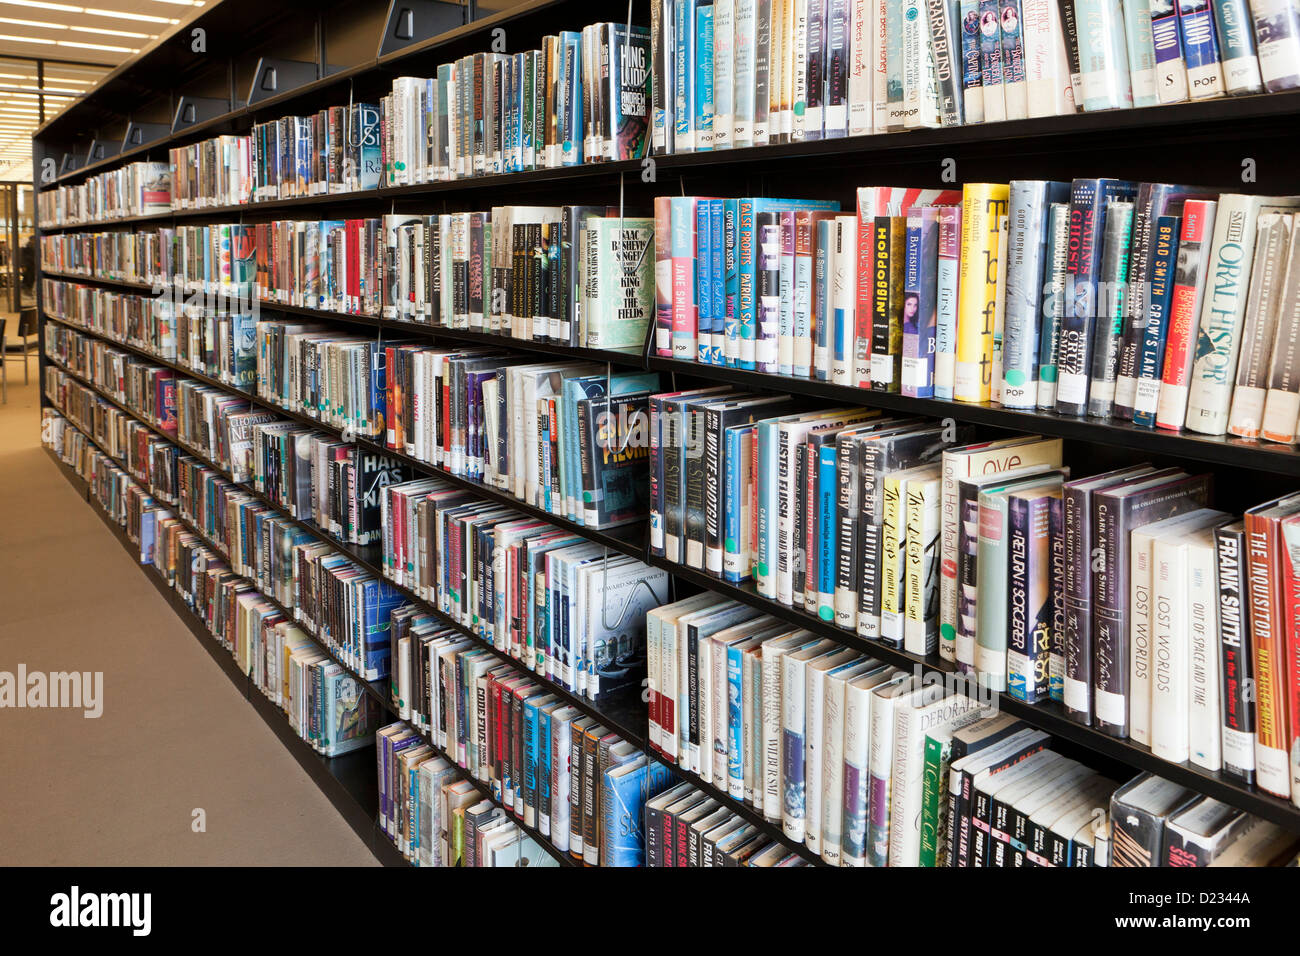 Library shelves full of books USA Stock Photo